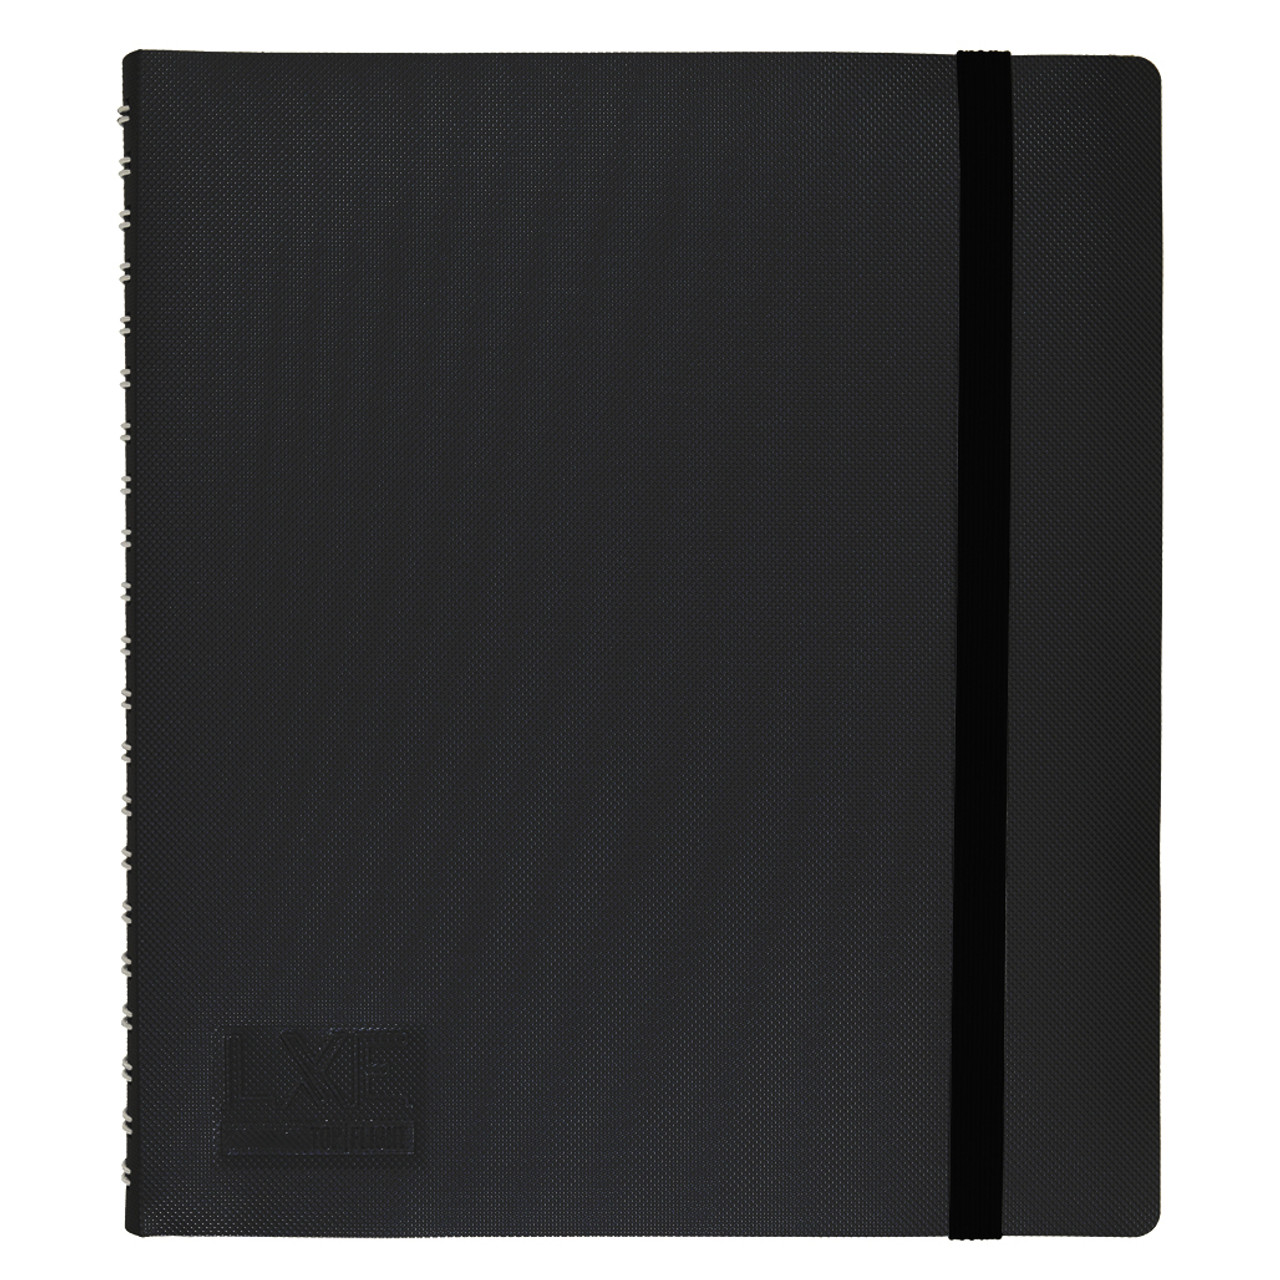 3 SET Black Leaf Notebook 14x20 Cm 20 Sheets 40 Pages